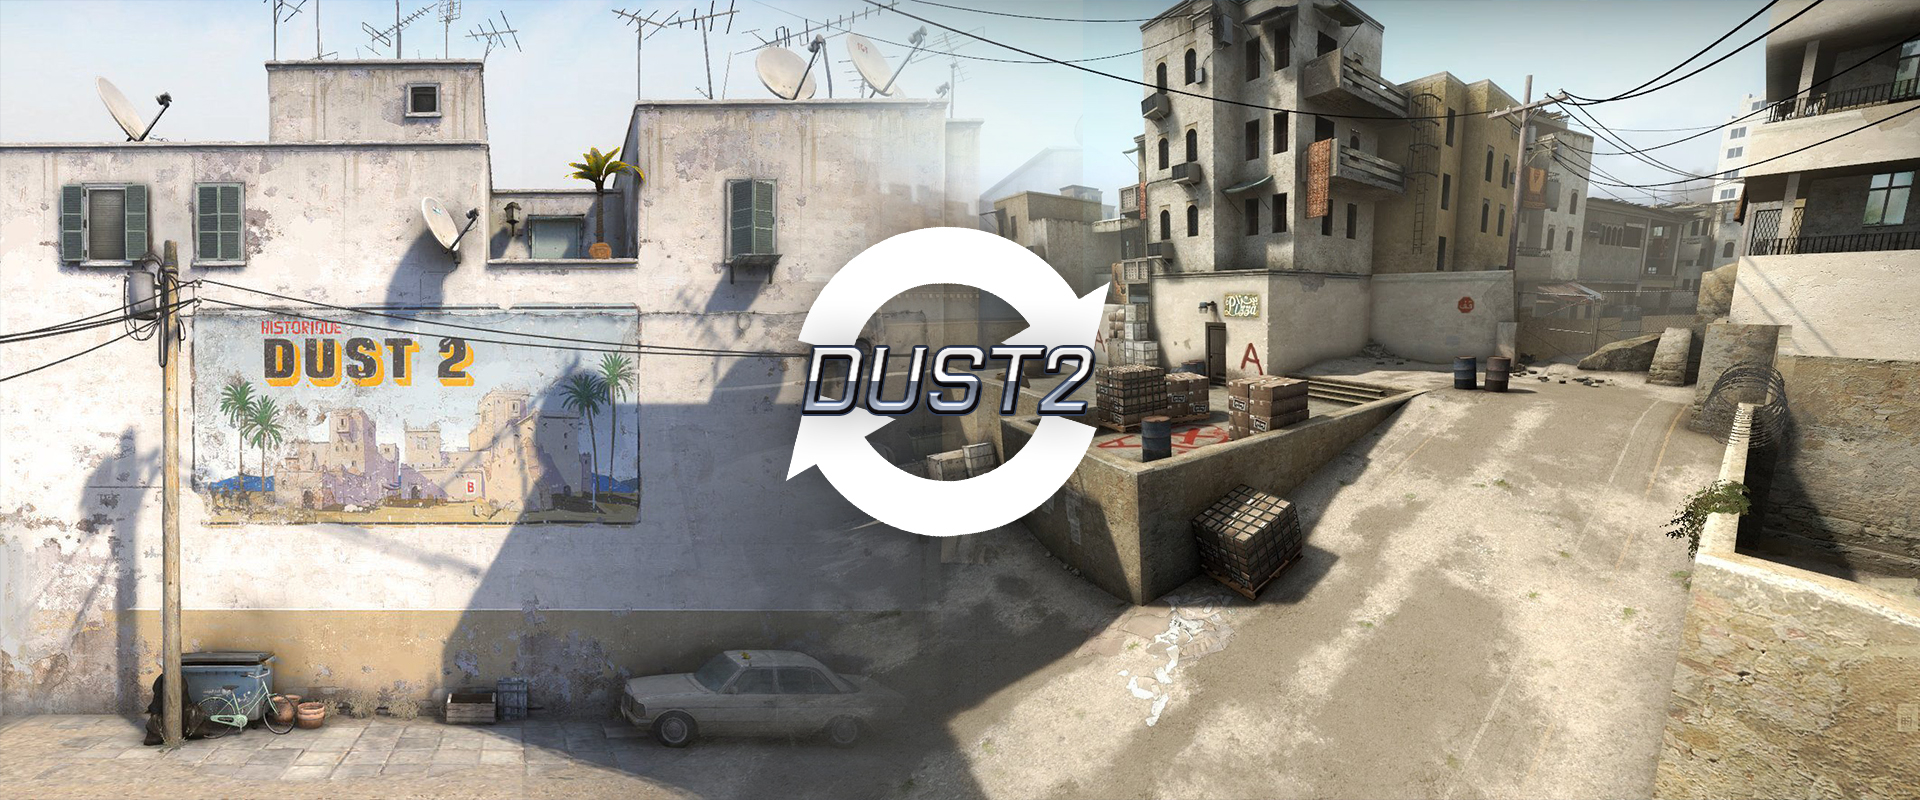 Így változott meg Dust 2